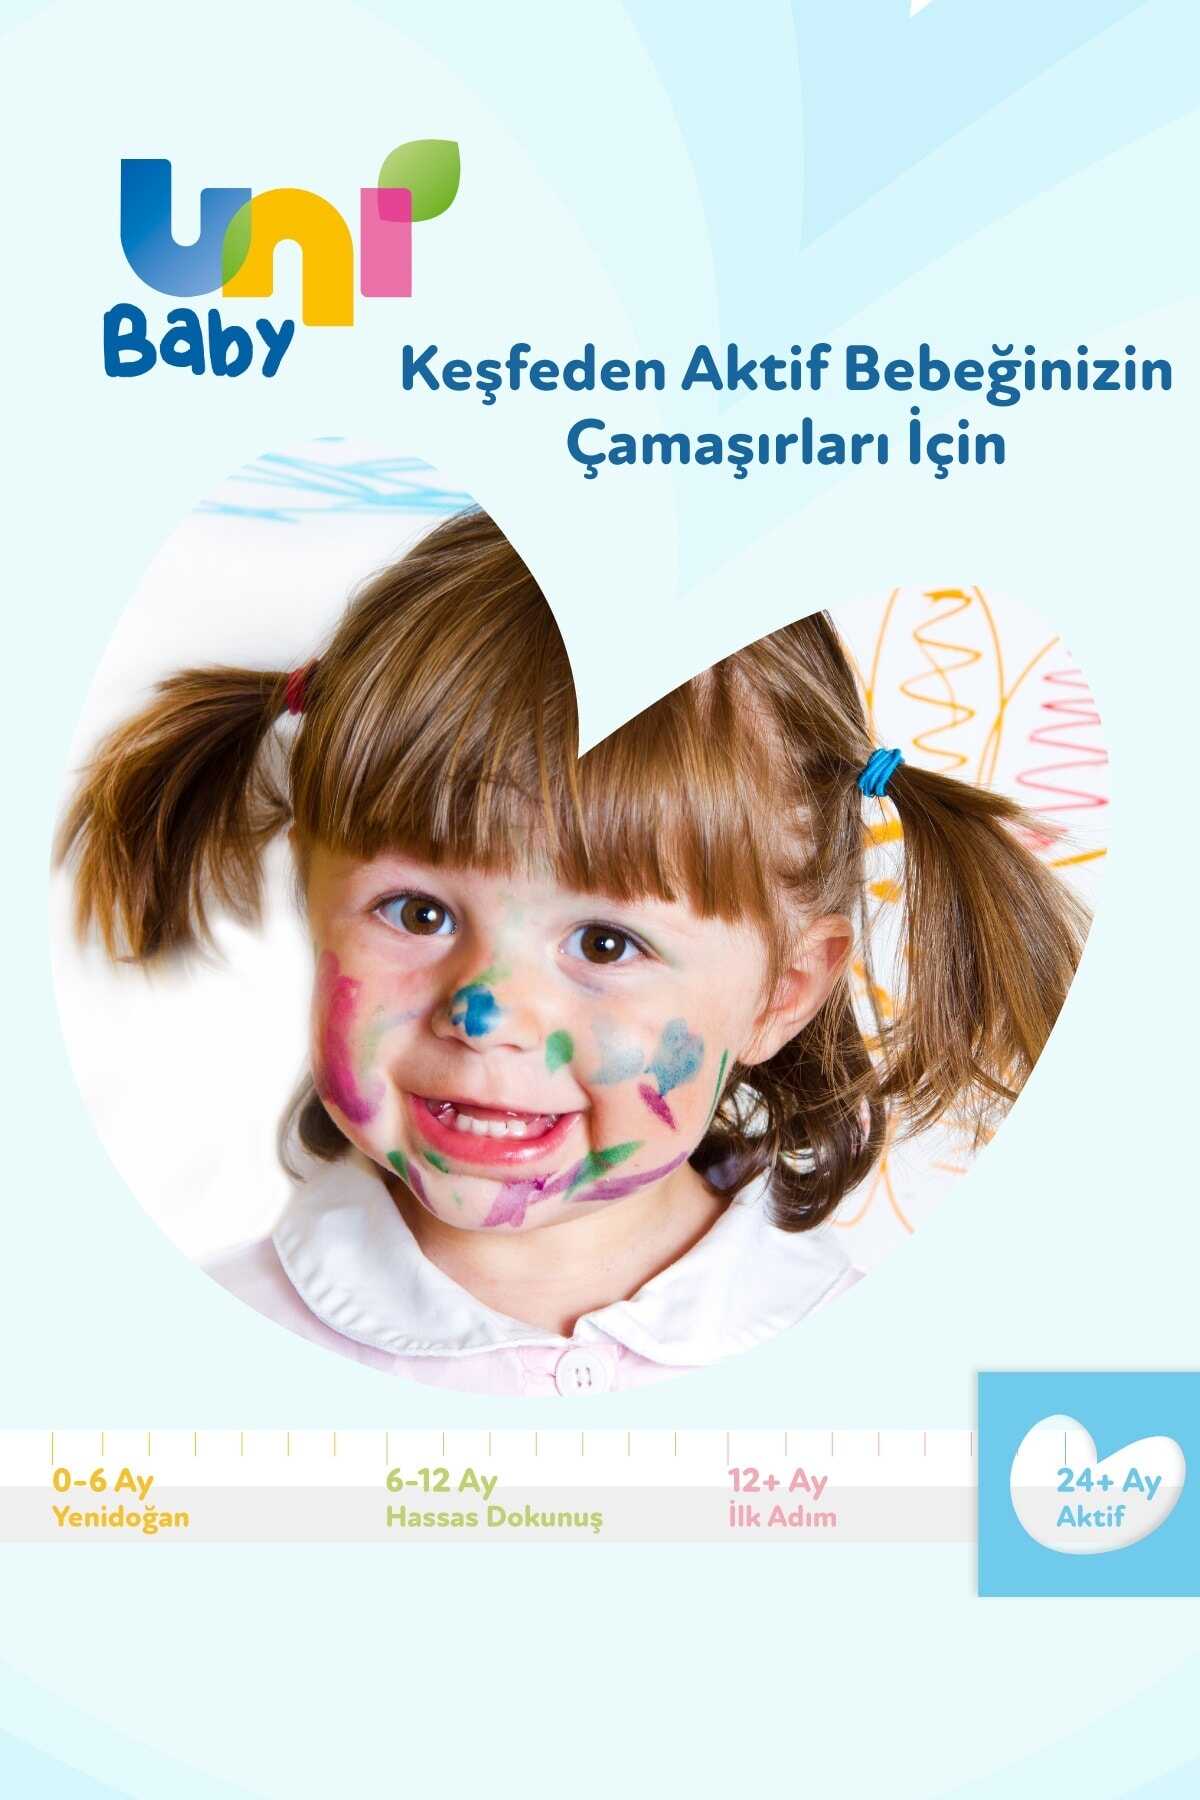 مایع لباسشویی کودک 1.5 لیتر مجموعه 3 عددی برند Uni Baby